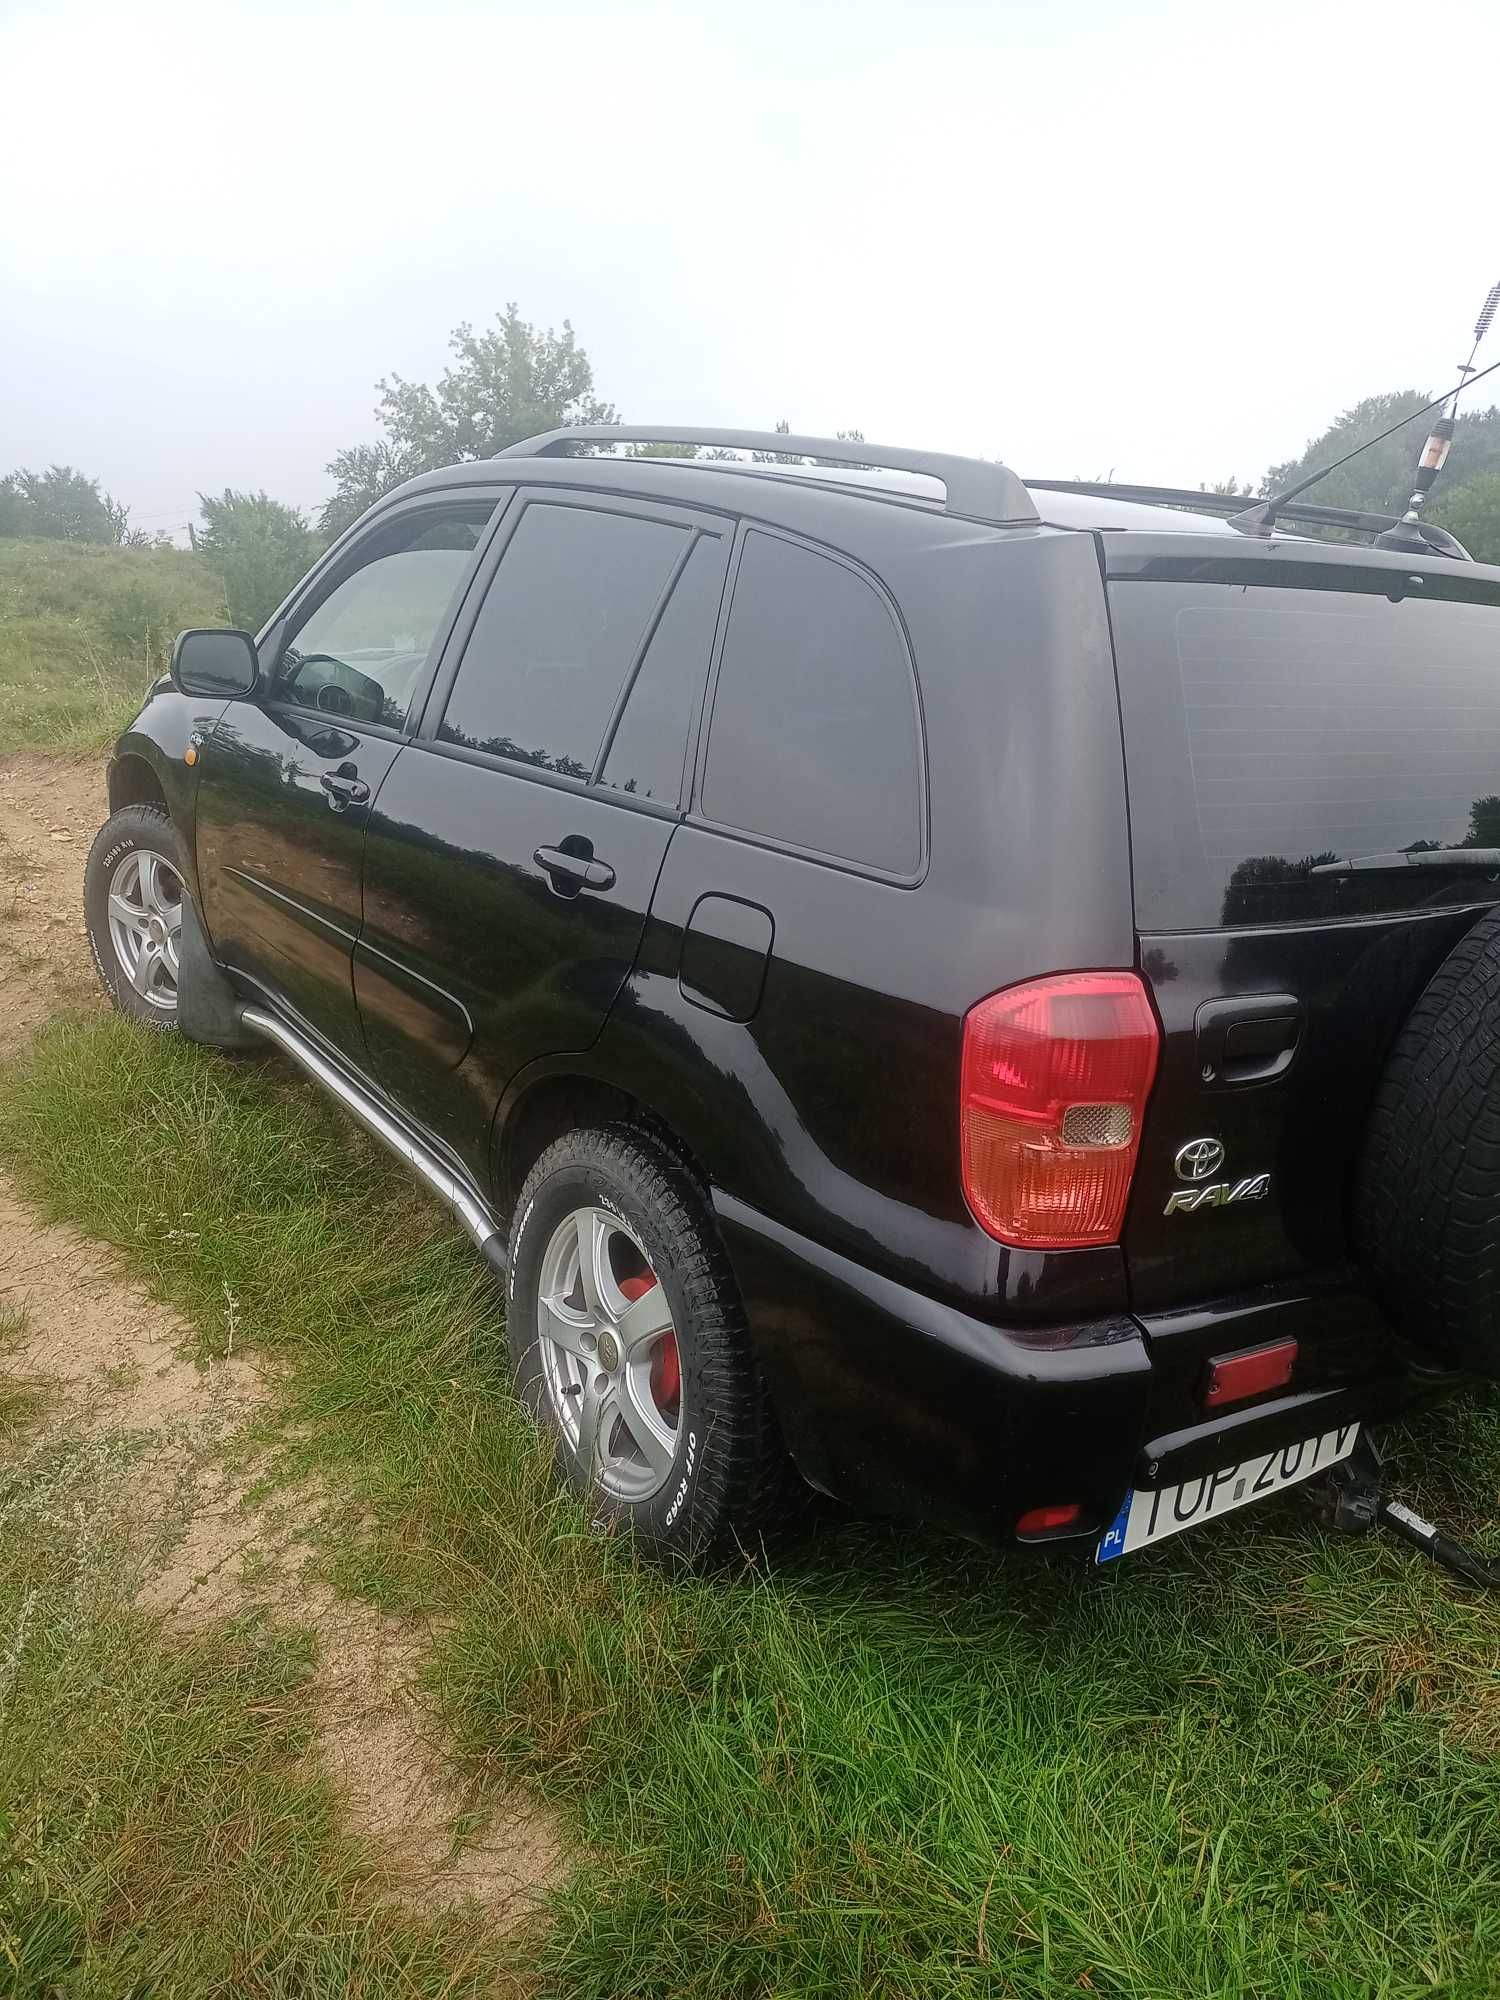 Sprzedam Toyota Rav4 Sulejów • Olx.pl